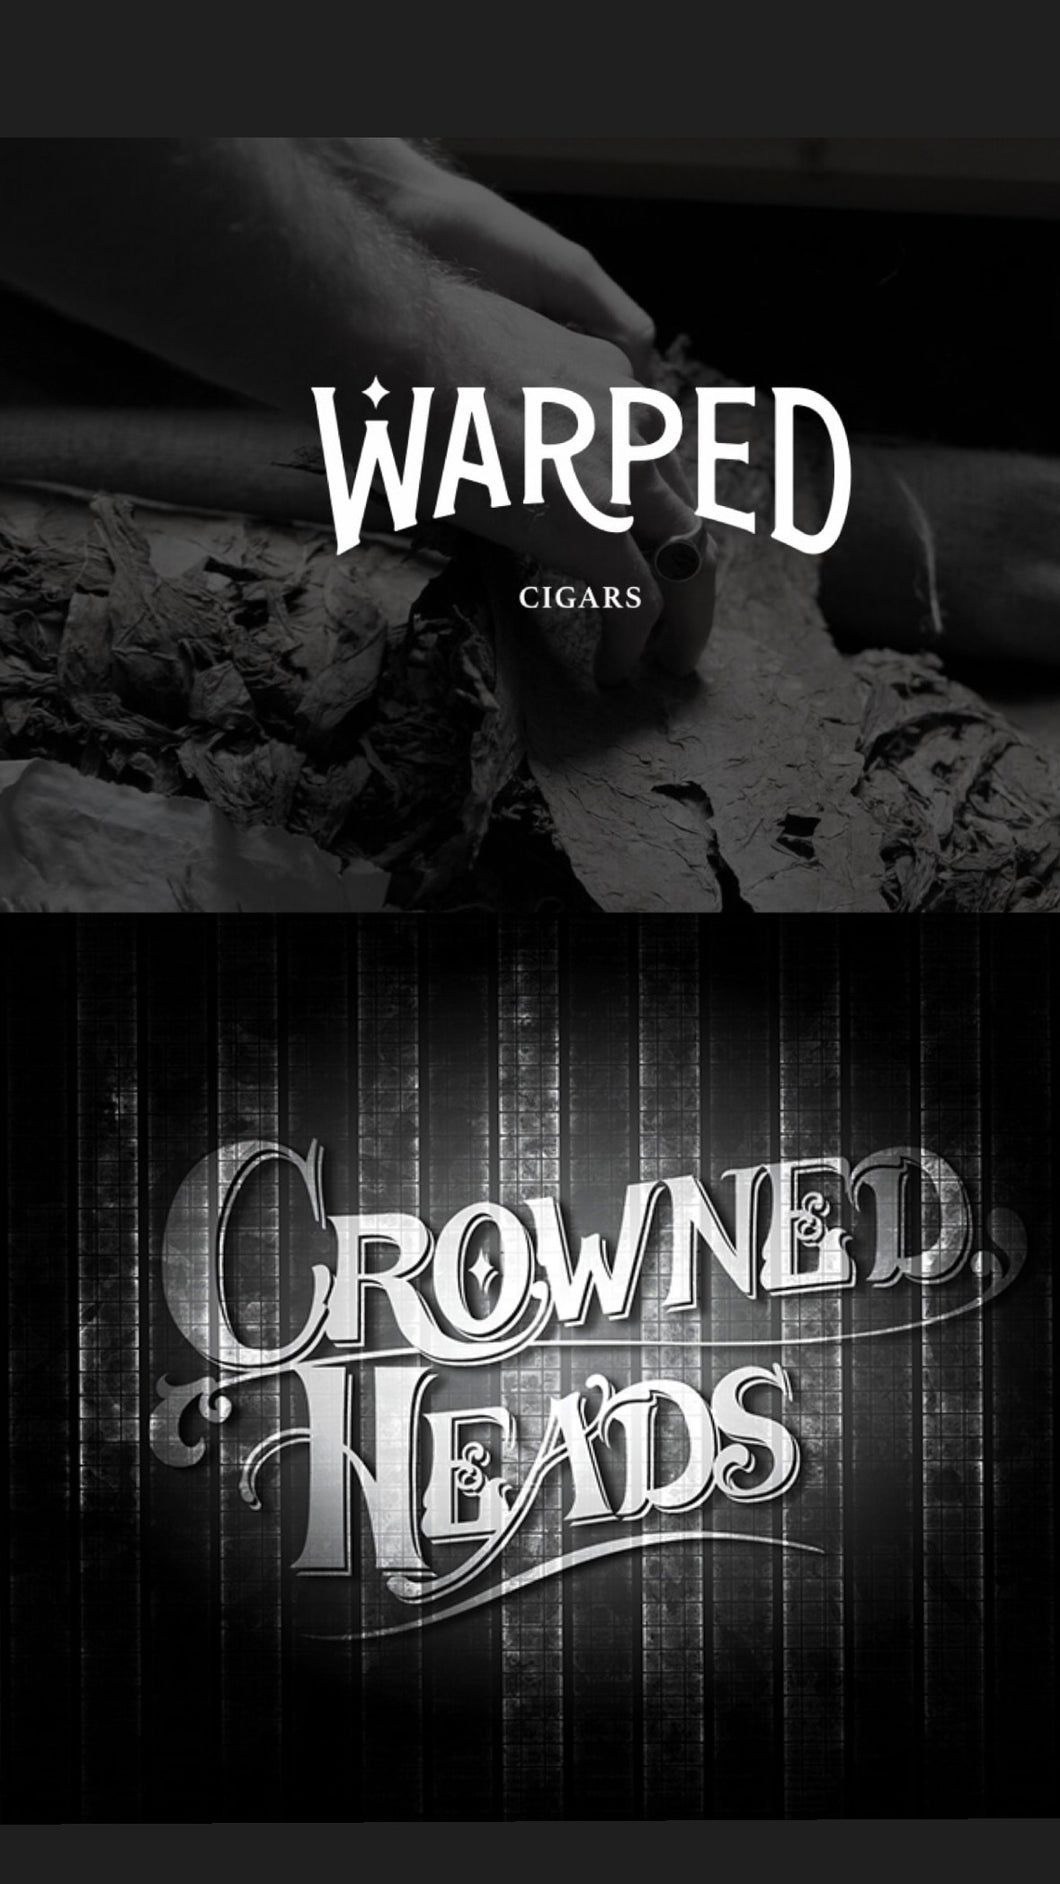 Warped vs Crowned Heads